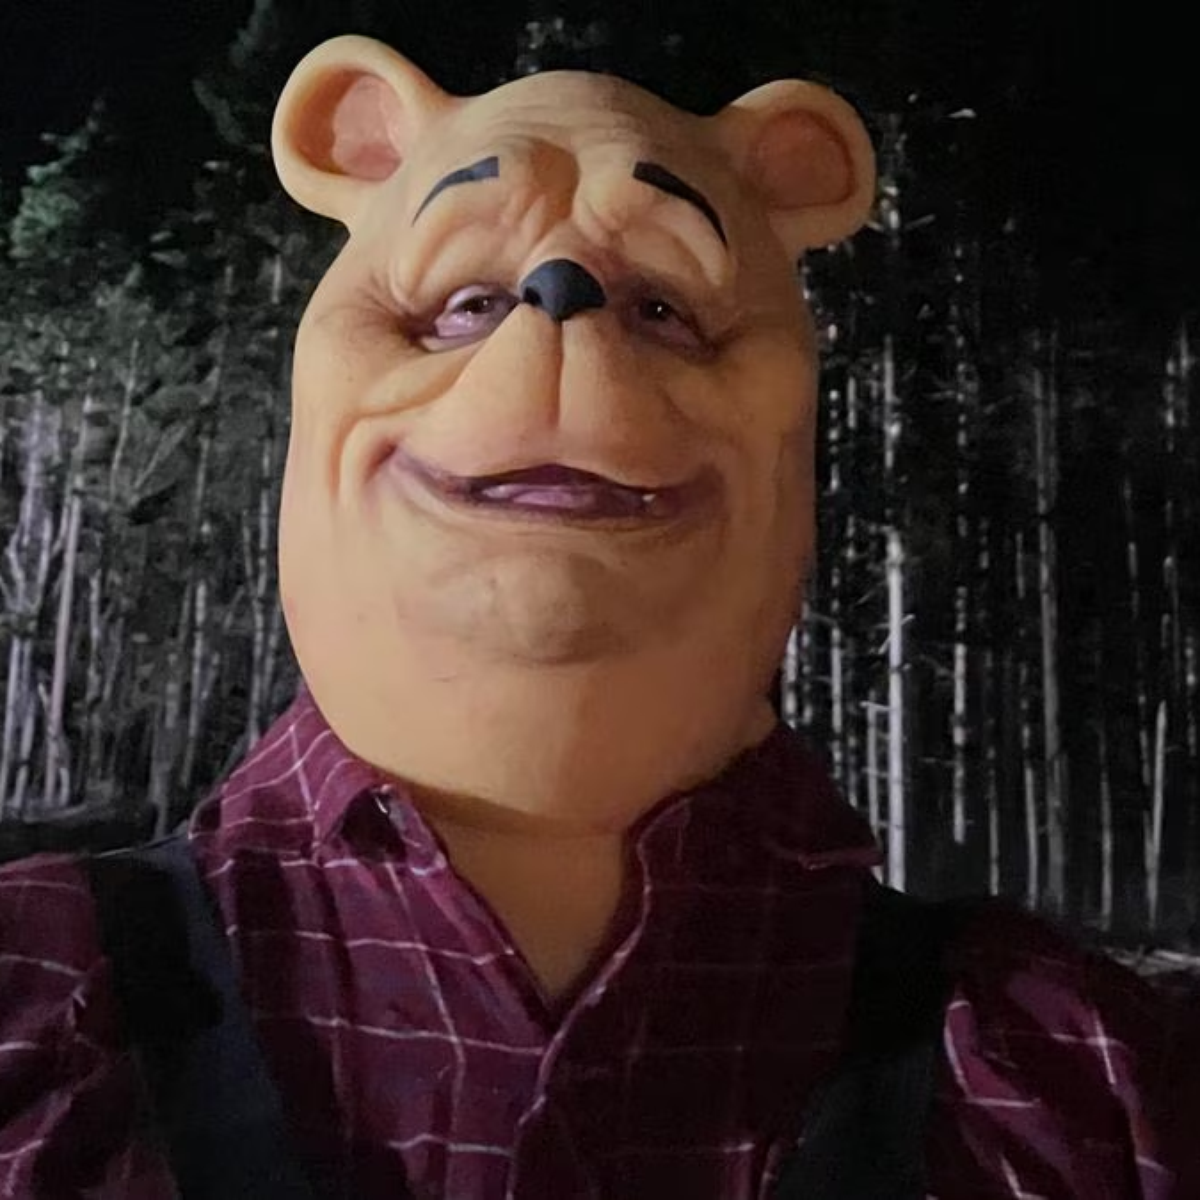 Rotten Tomatoes: terror do Ursinho Pooh é um dos piores filmes do